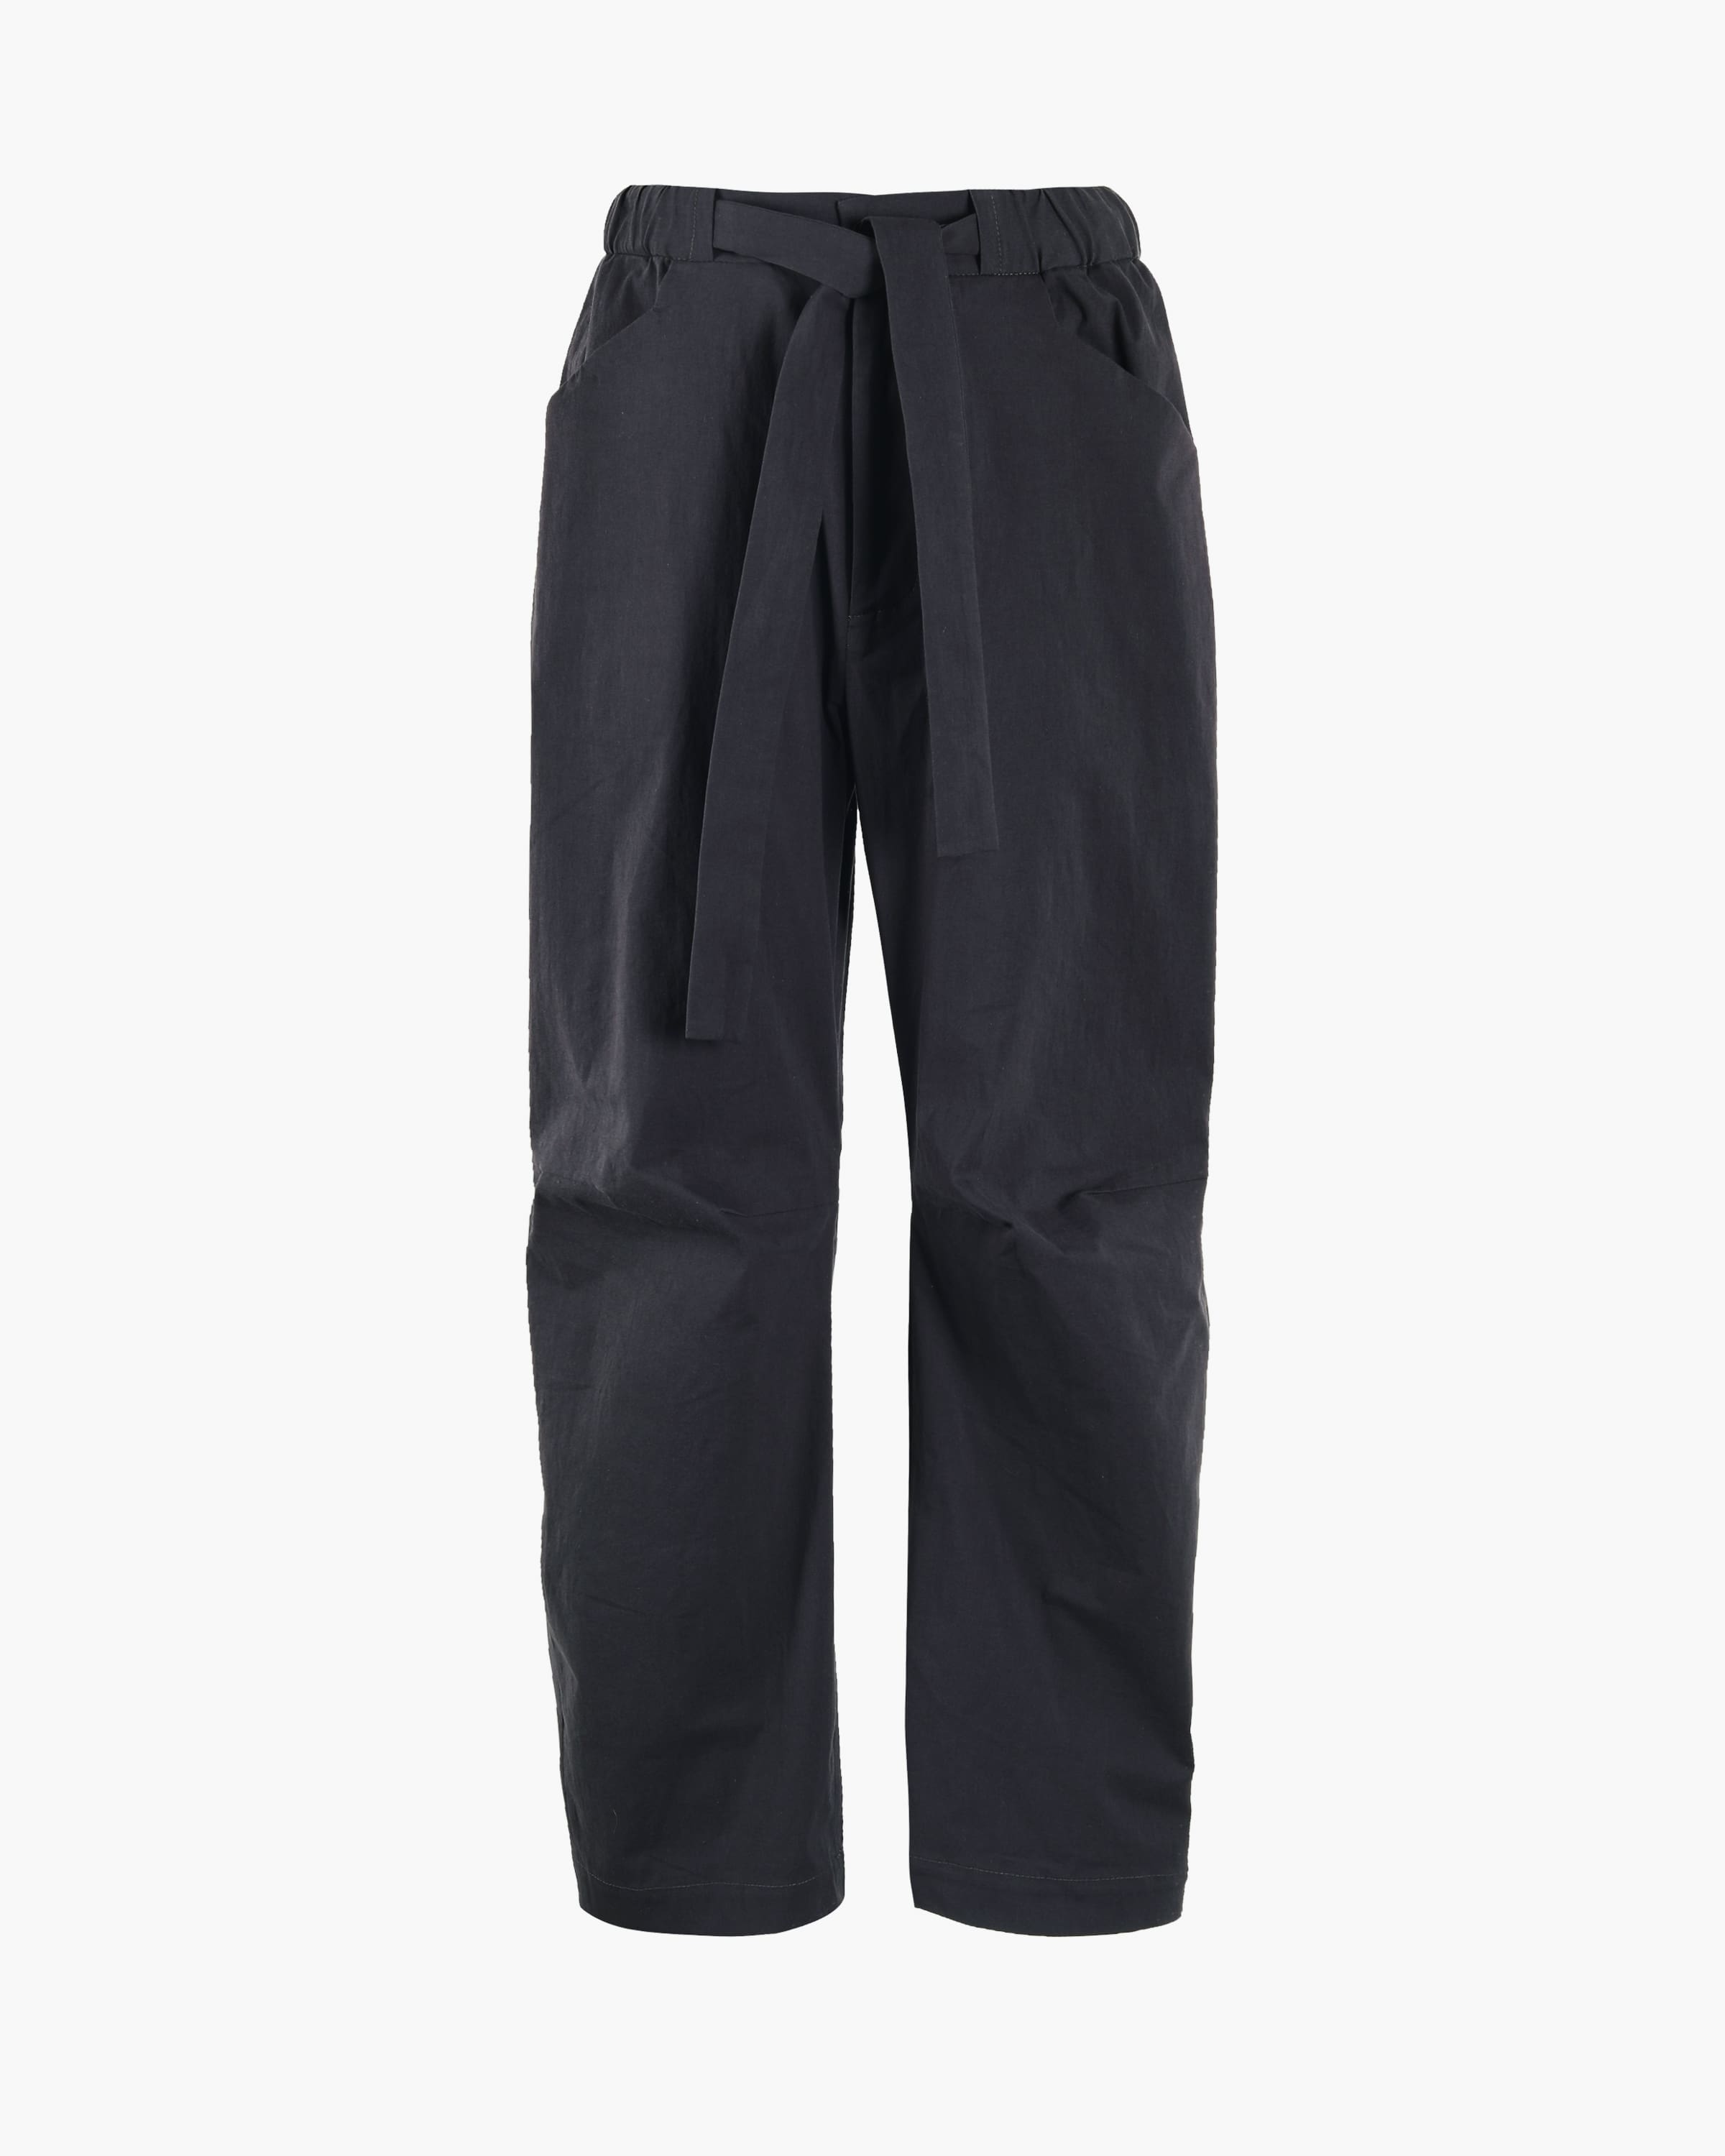 Moncler Men's Brown Cotton Poplin Wide-Leg Pants, Brand Size 48 (Waist Size  32